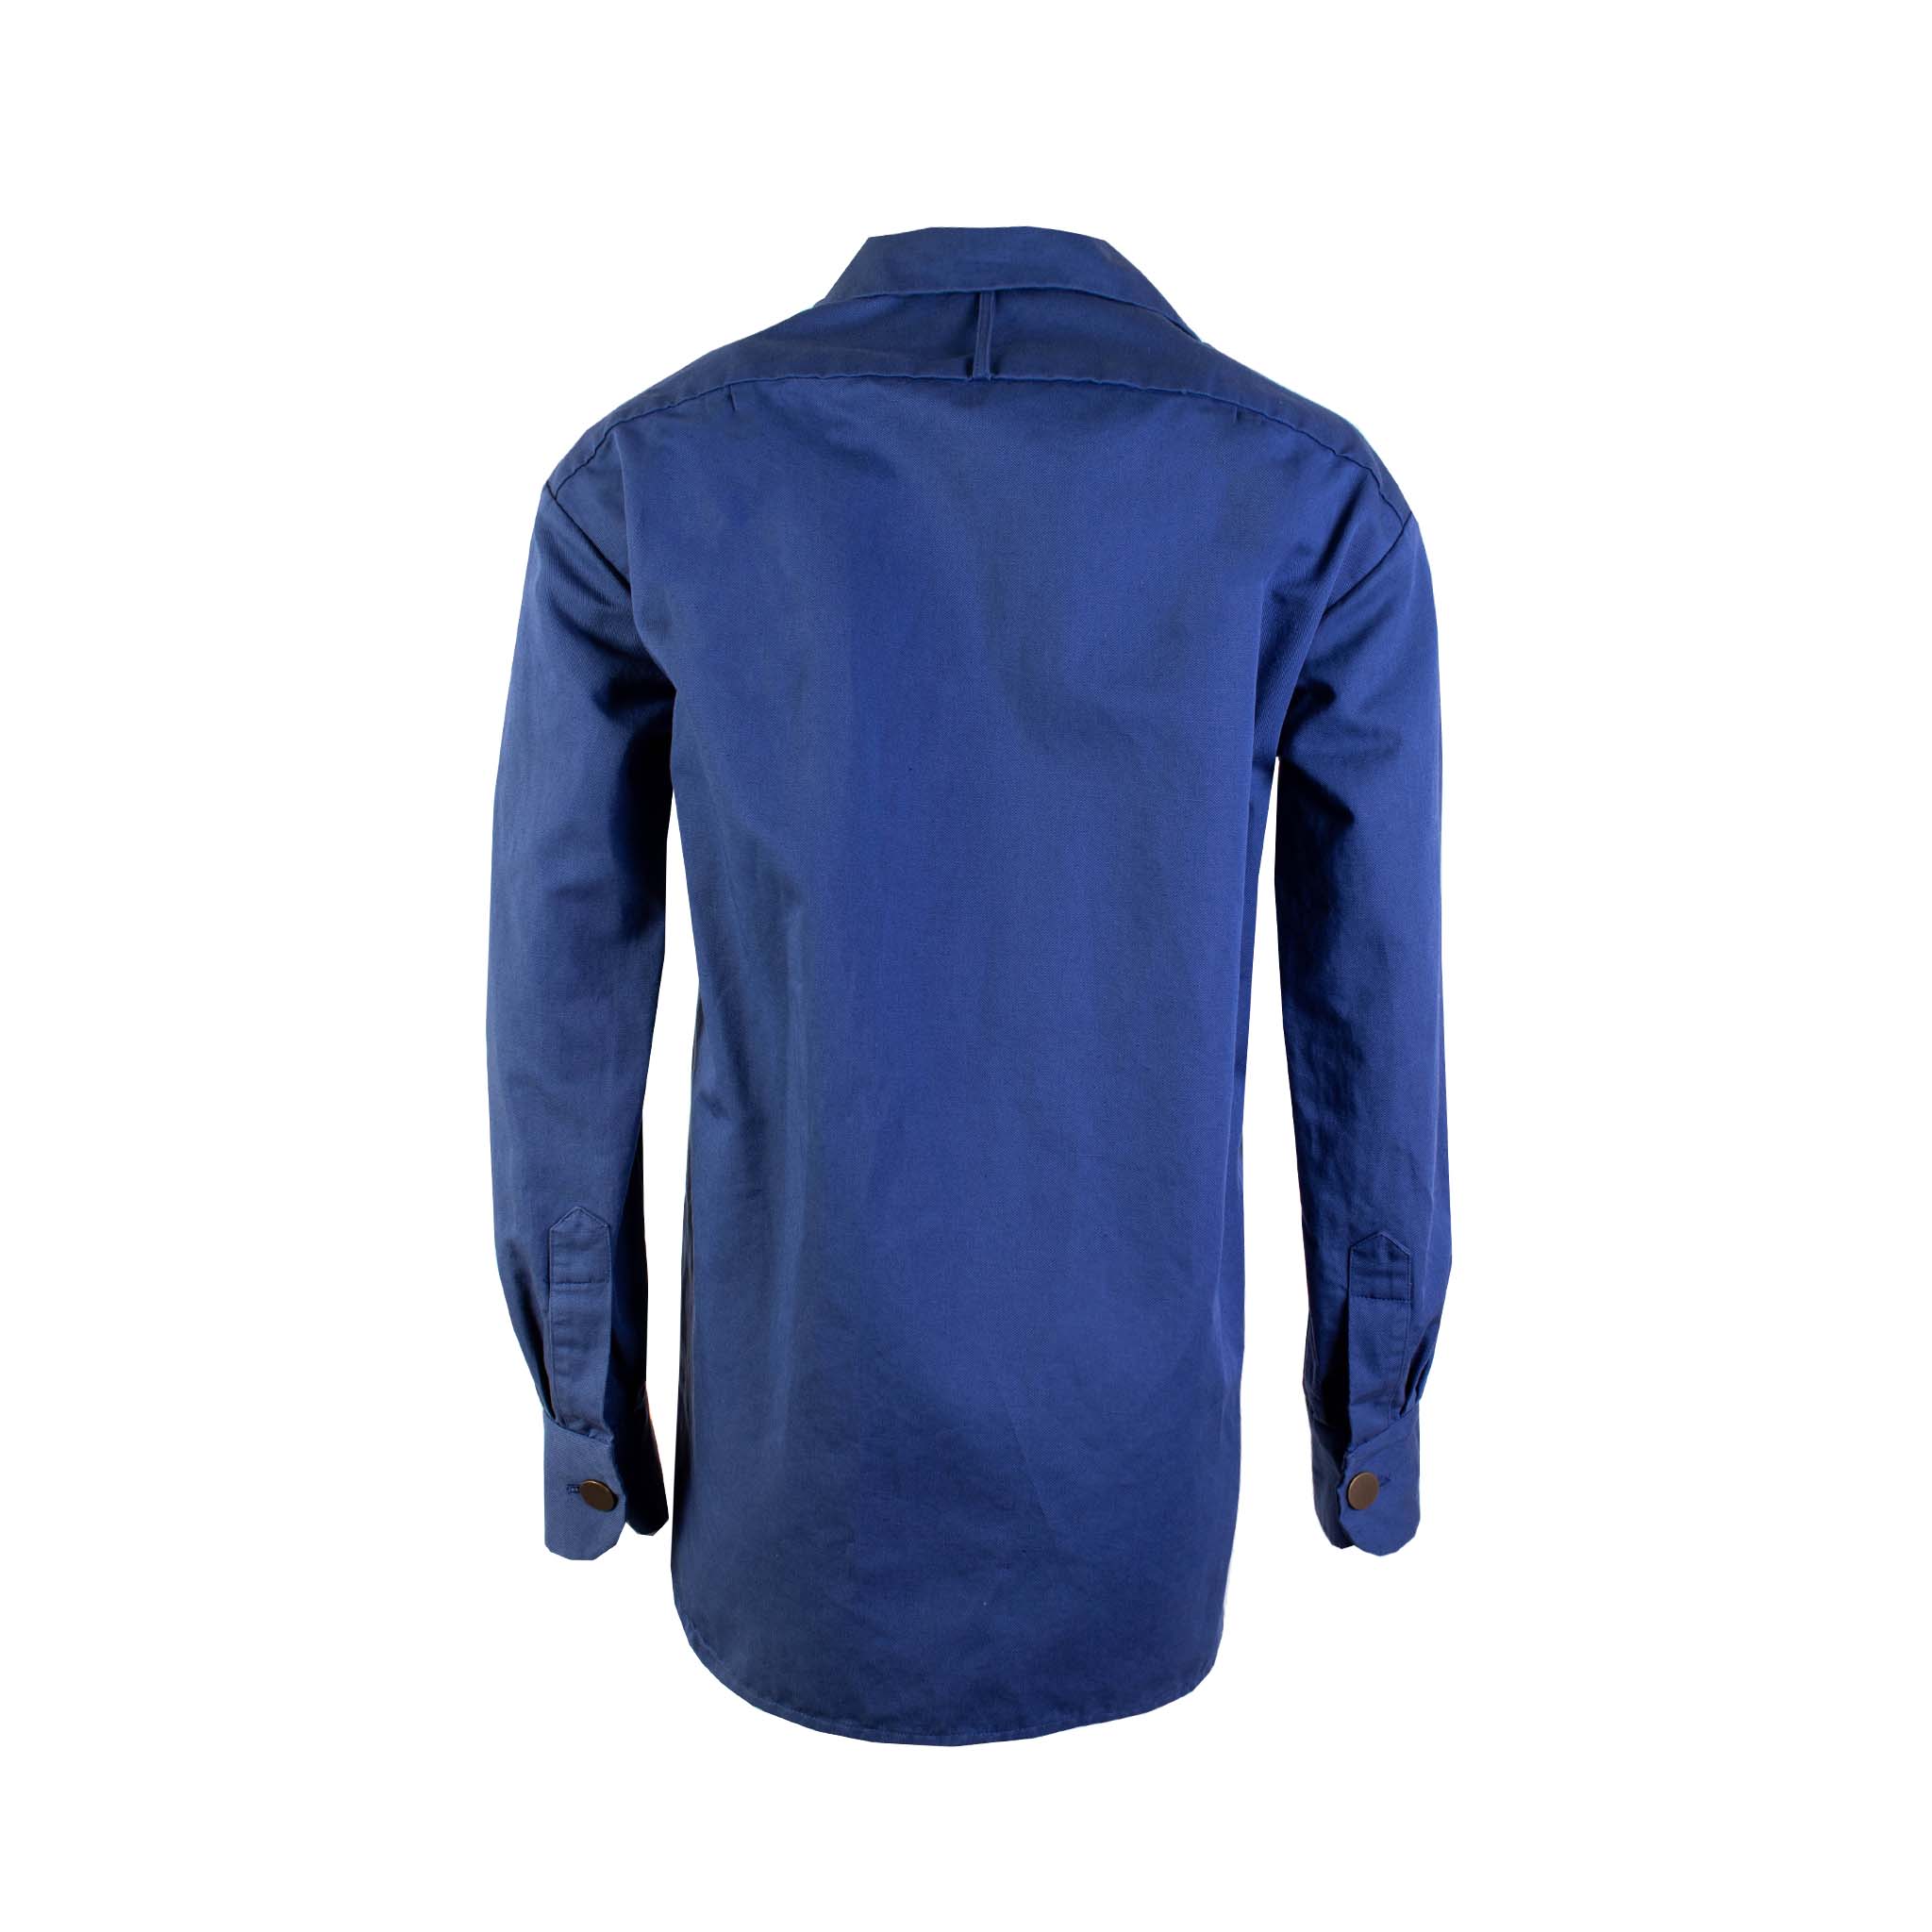 Lardini Blue Cotton Jacket 'shirt' Style - Fizigo